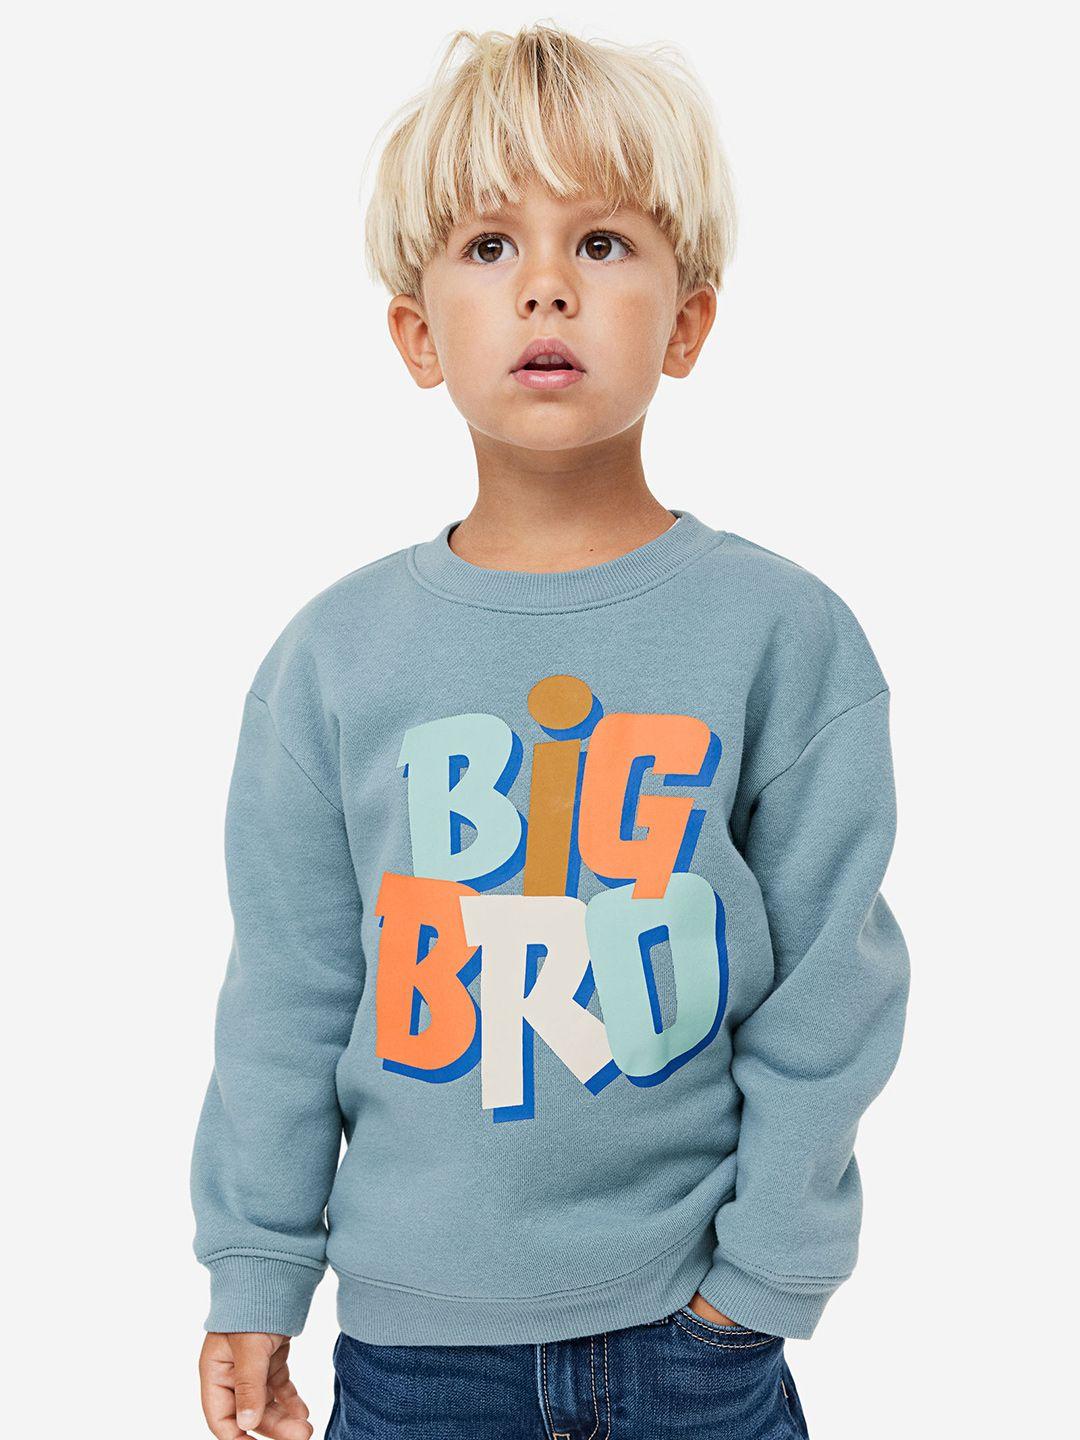 h&m boys printed sibling sweatshirt